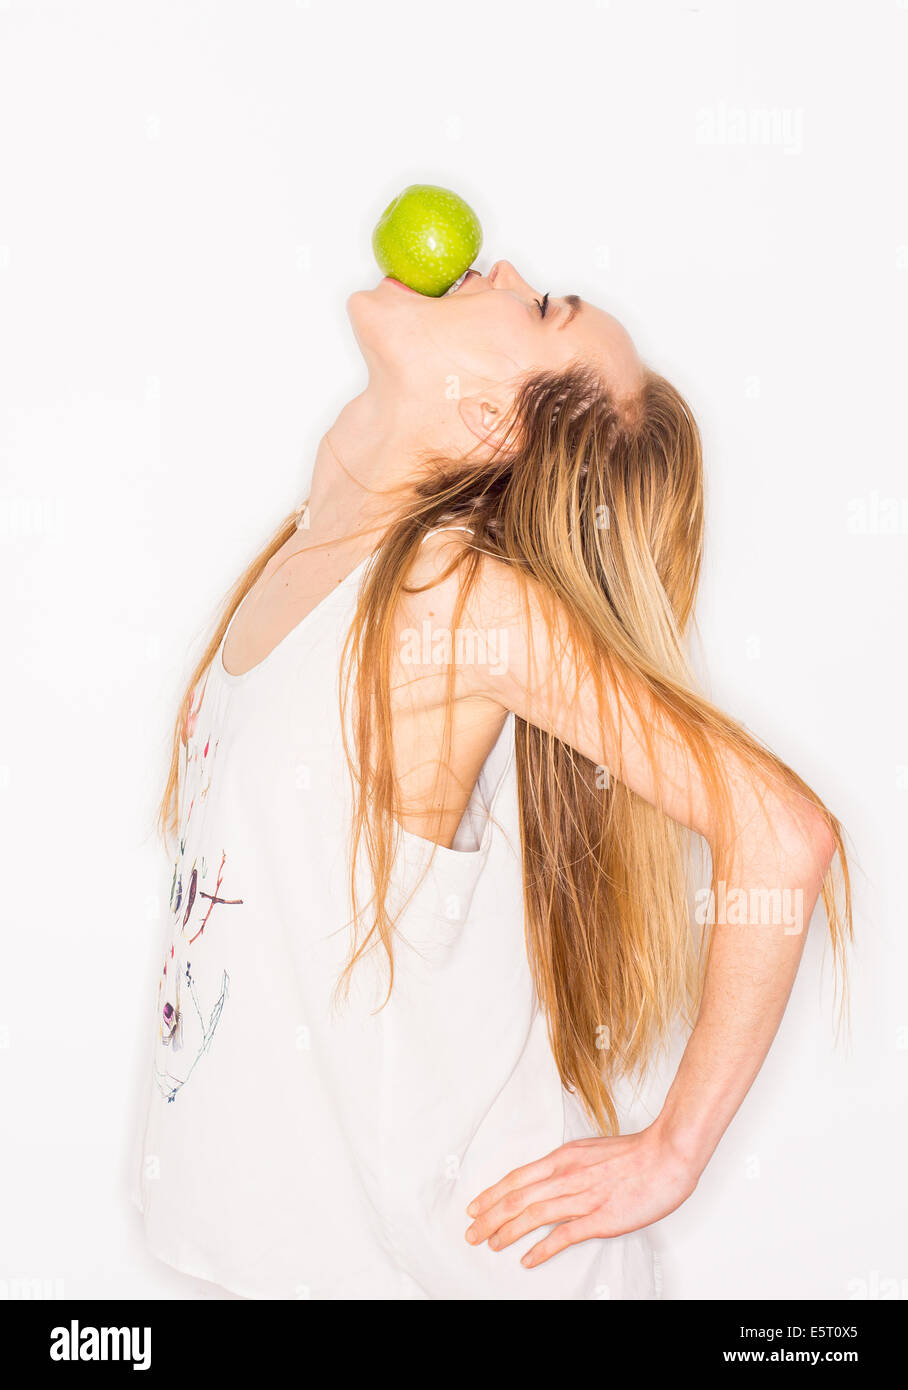 Frau einen Apfel essen. Stockfoto